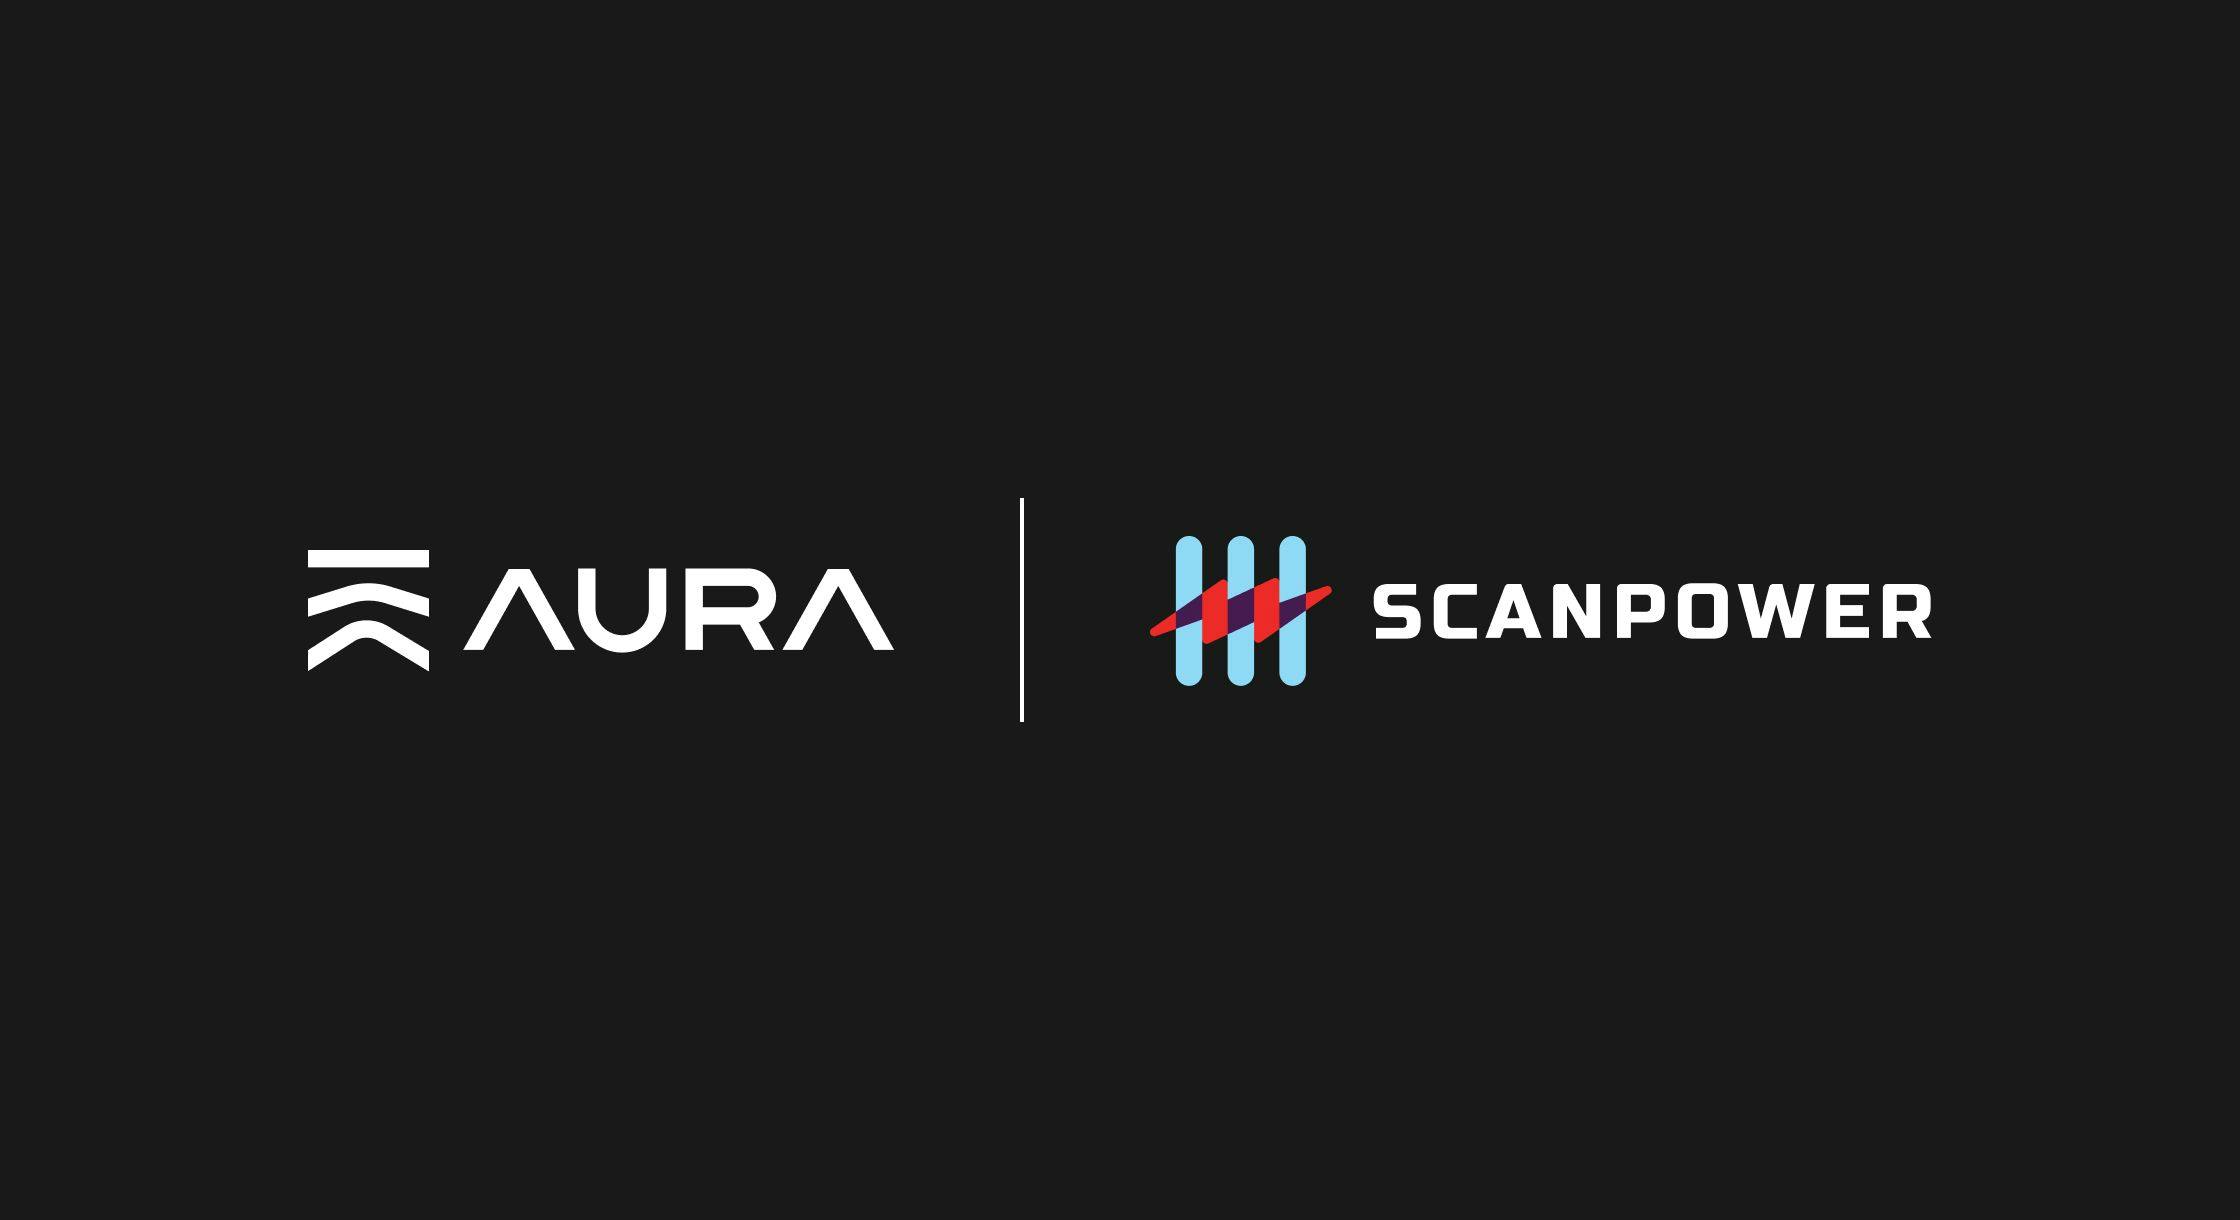 Announcing Aura's new ScanPower integration